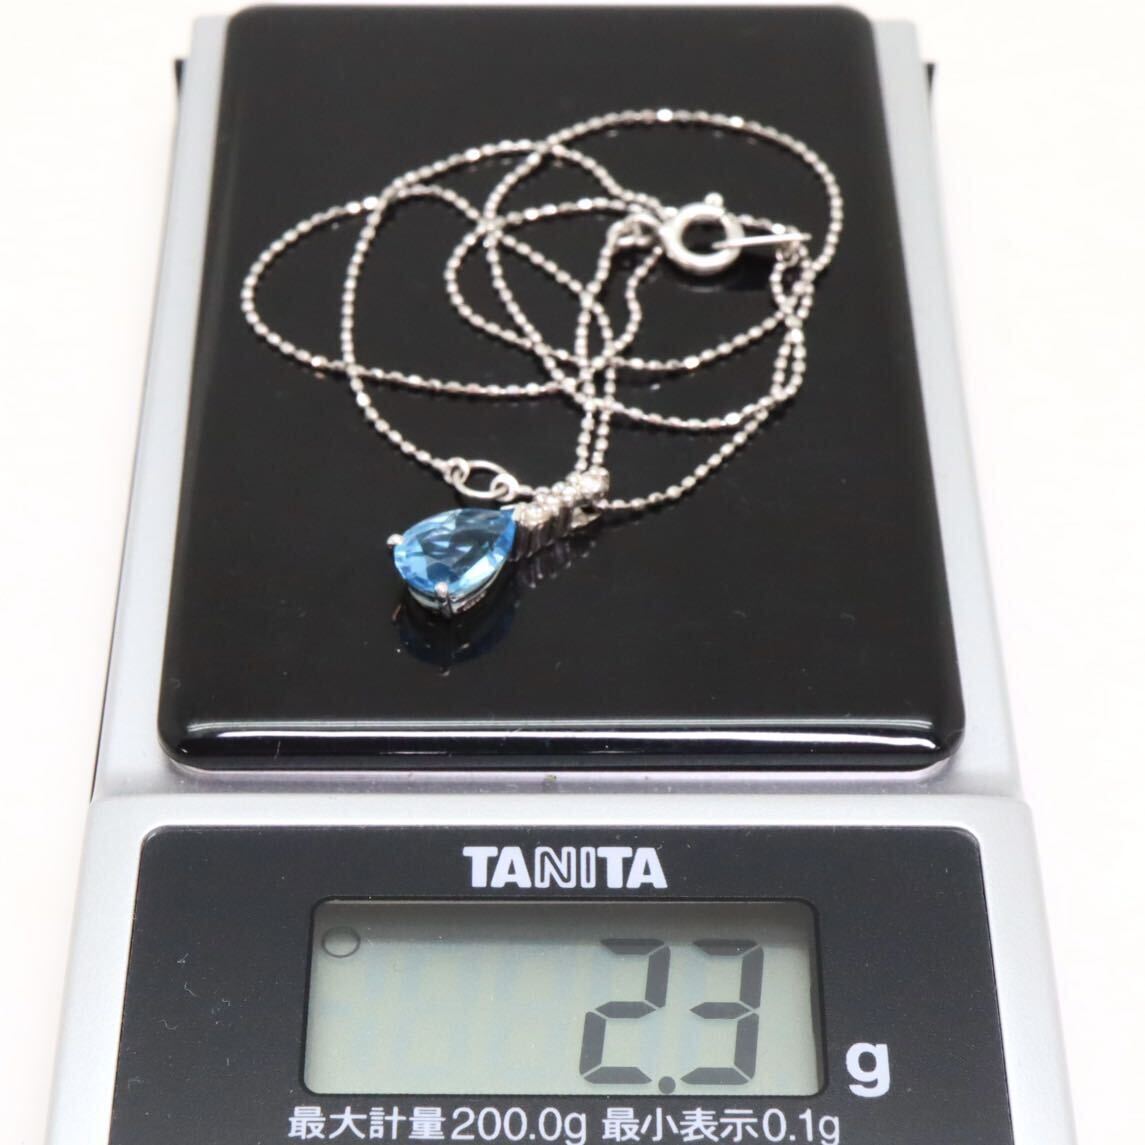 良品!!＊K18WG天然ブルートパーズ/天然ダイヤモンドペンダント＊b 約2.3g 約40.0cm blue topaz diamond jewelry necklace pendant EA6/EA6_画像10